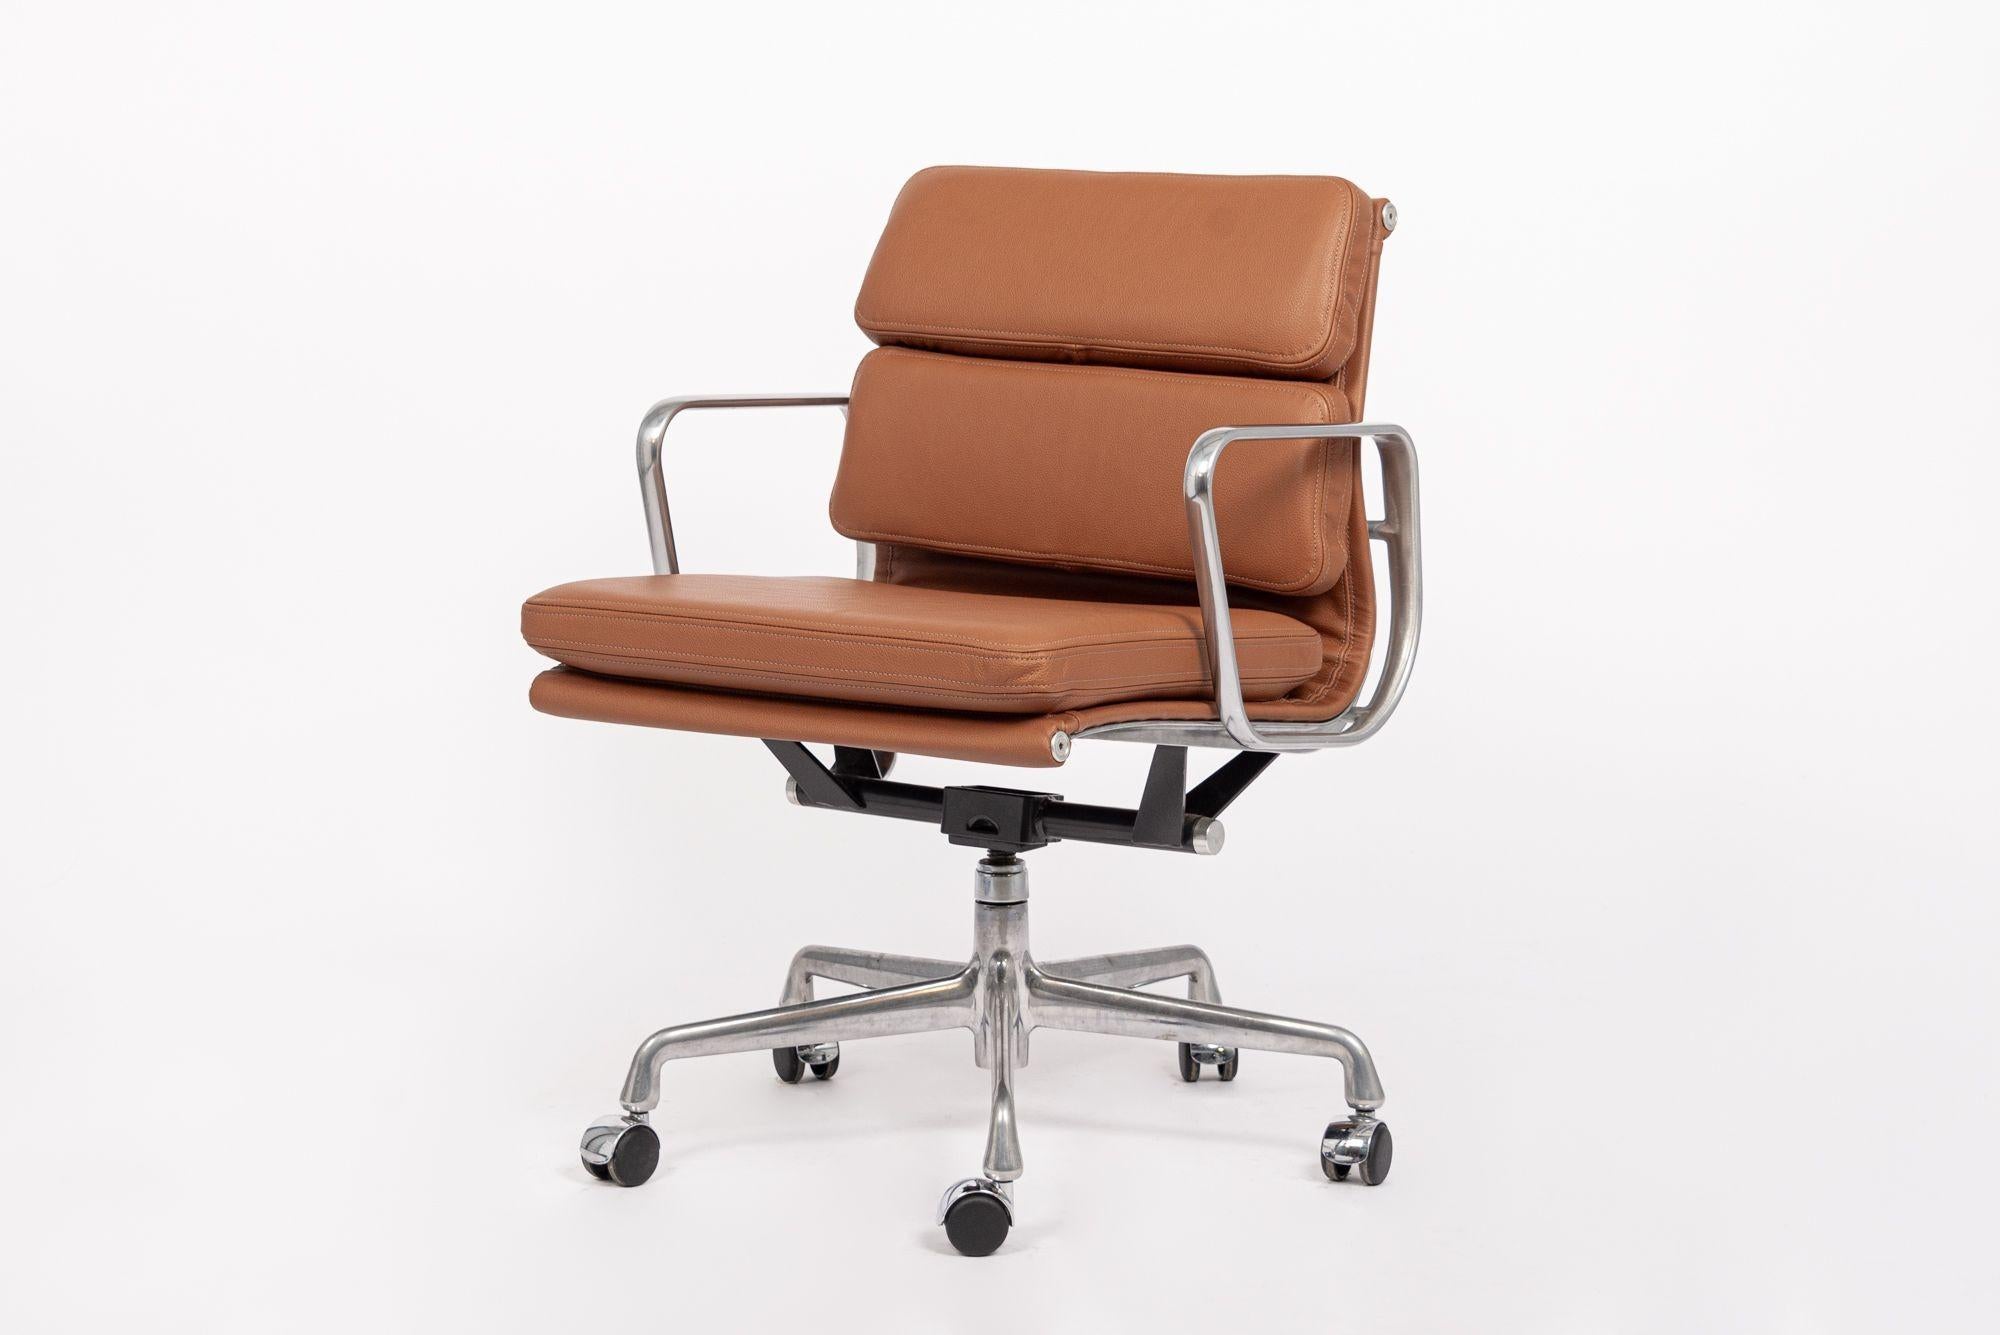 Dieser authentische Eames for Herman Miller Soft Pad Management Height Schreibtischstuhl aus braunem Leder aus der Aluminum Group Collection wurde in den 2000er Jahren hergestellt. Dieser klassische, moderne Bürostuhl aus der Mitte des Jahrhunderts